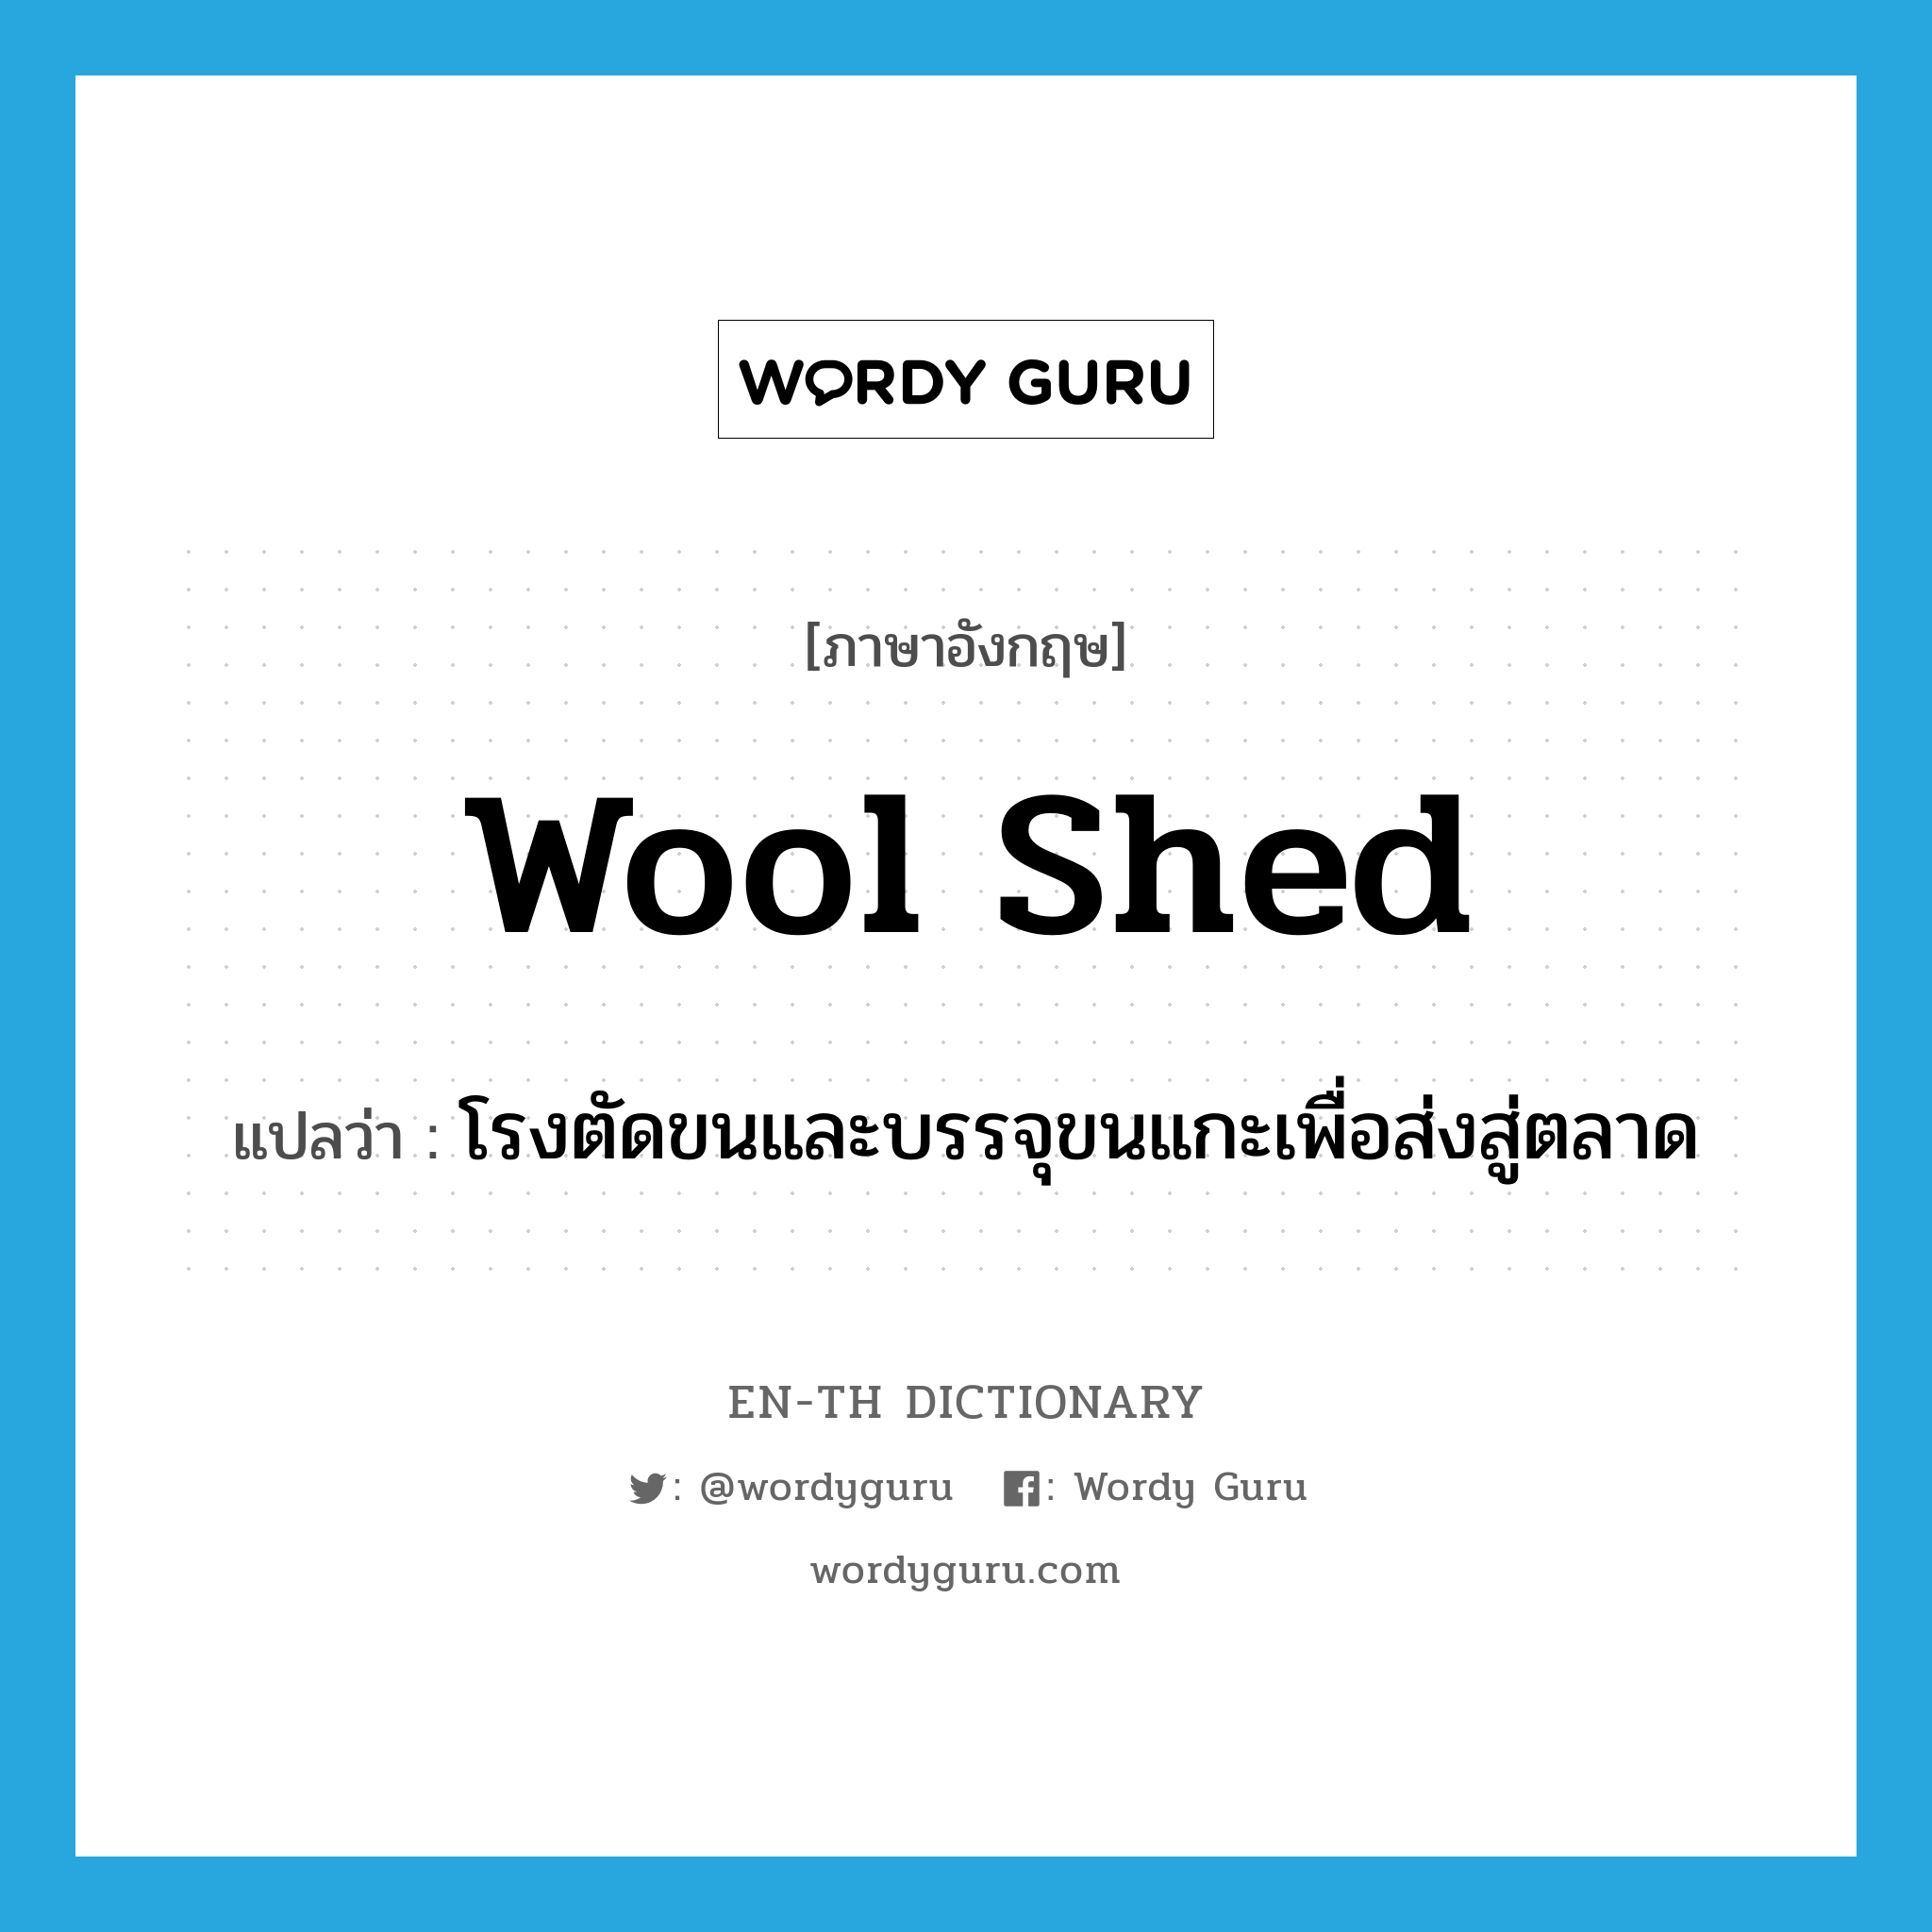 wool shed แปลว่า?, คำศัพท์ภาษาอังกฤษ wool shed แปลว่า โรงตัดขนและบรรจุขนแกะเพื่อส่งสู่ตลาด ประเภท N หมวด N